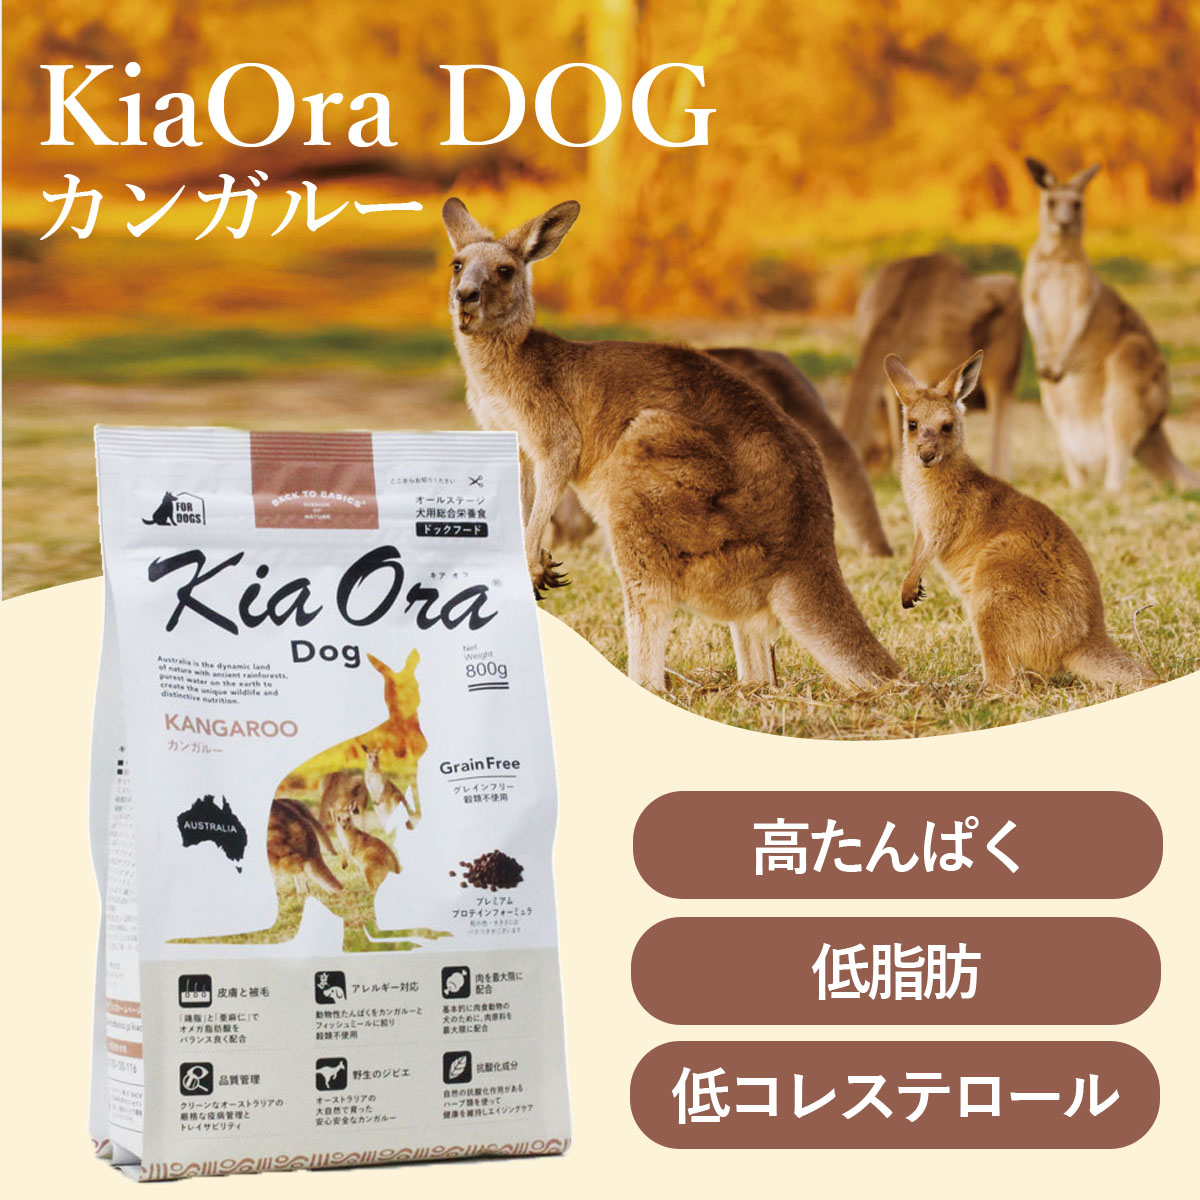 選べるプレゼント付き) KiaOra キアオラ ドッグフード カンガルー 2.5